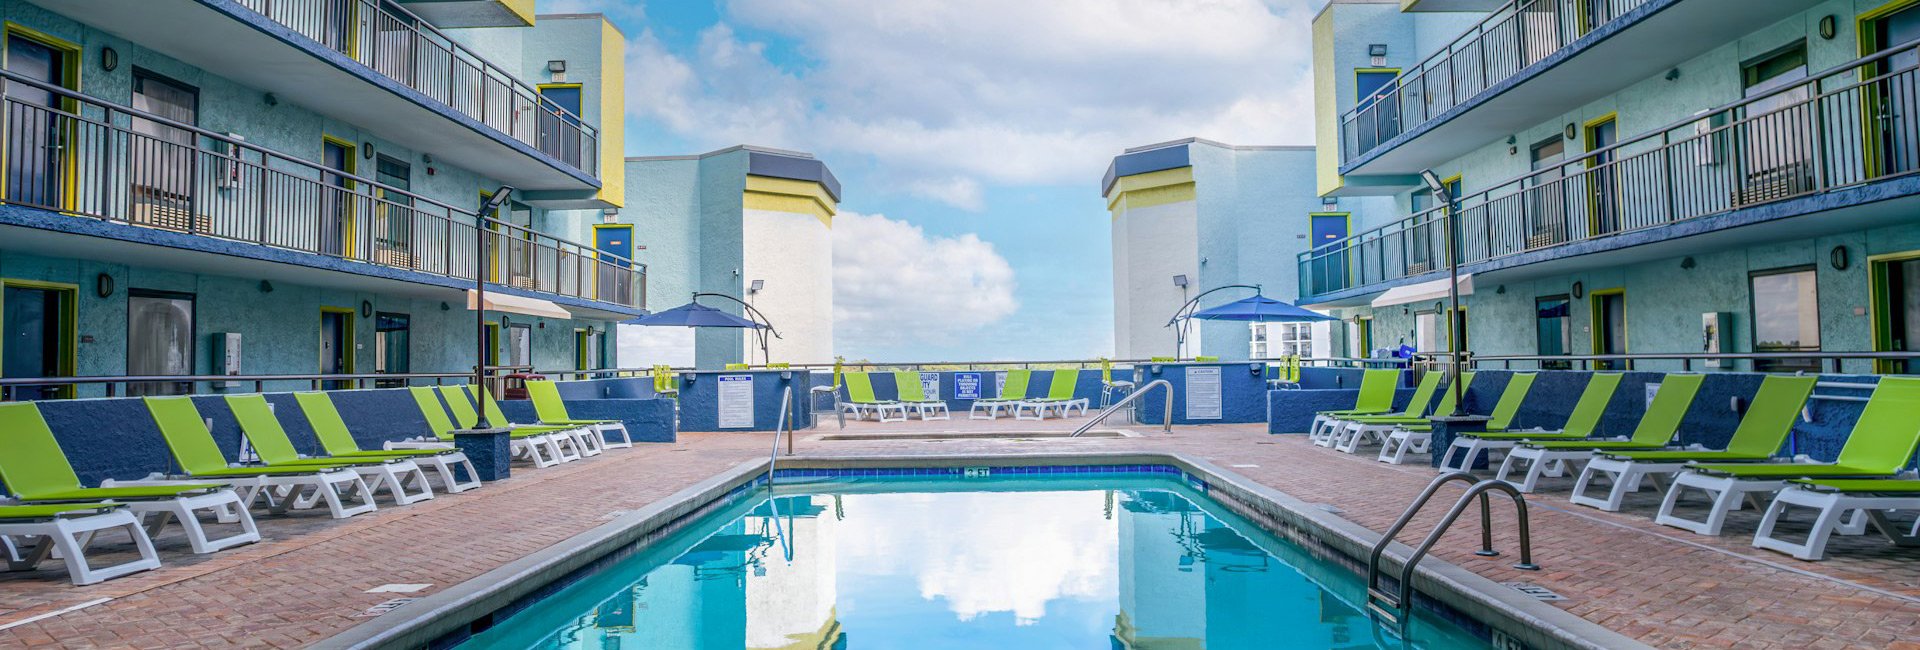 Monterey Bay Suites - Rooftop Pool Deck